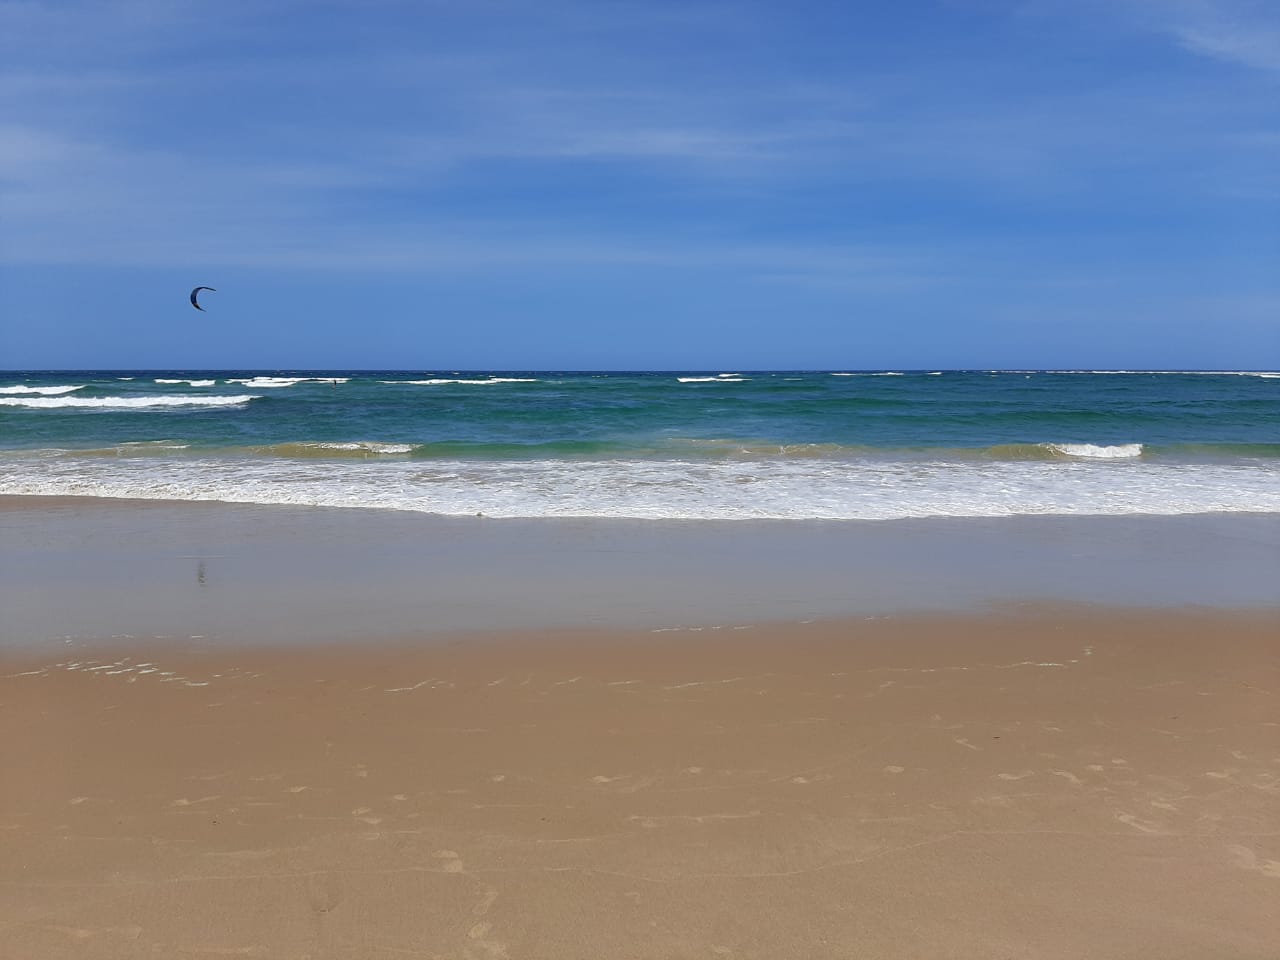 Foto af Praia da Barra med lang lige kyst